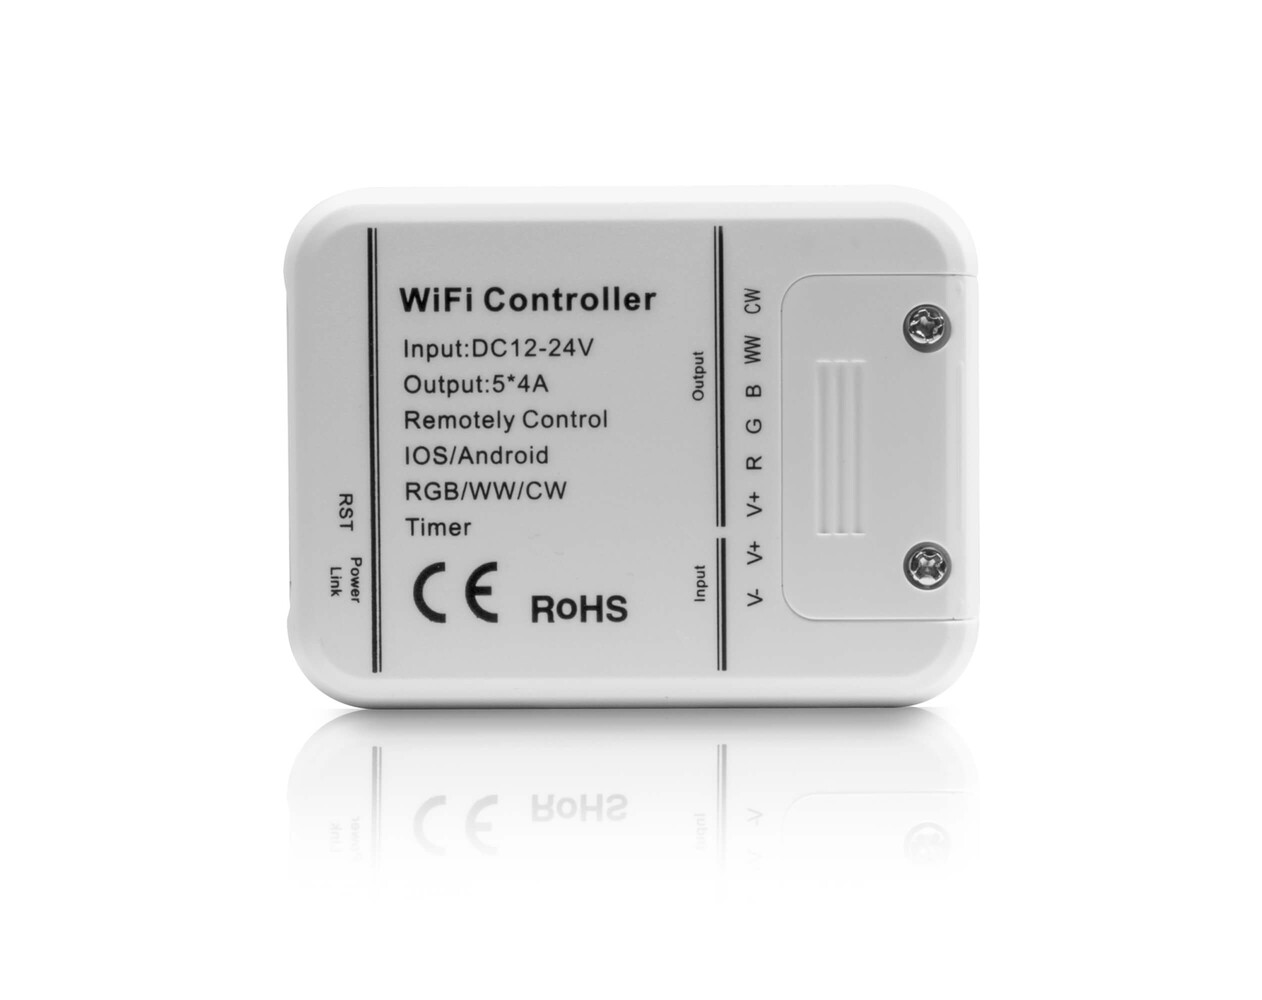 hochwertiger-neutralweisser-LED-Streifen-von-LED-Universum-mit-WLAN-und-Controller